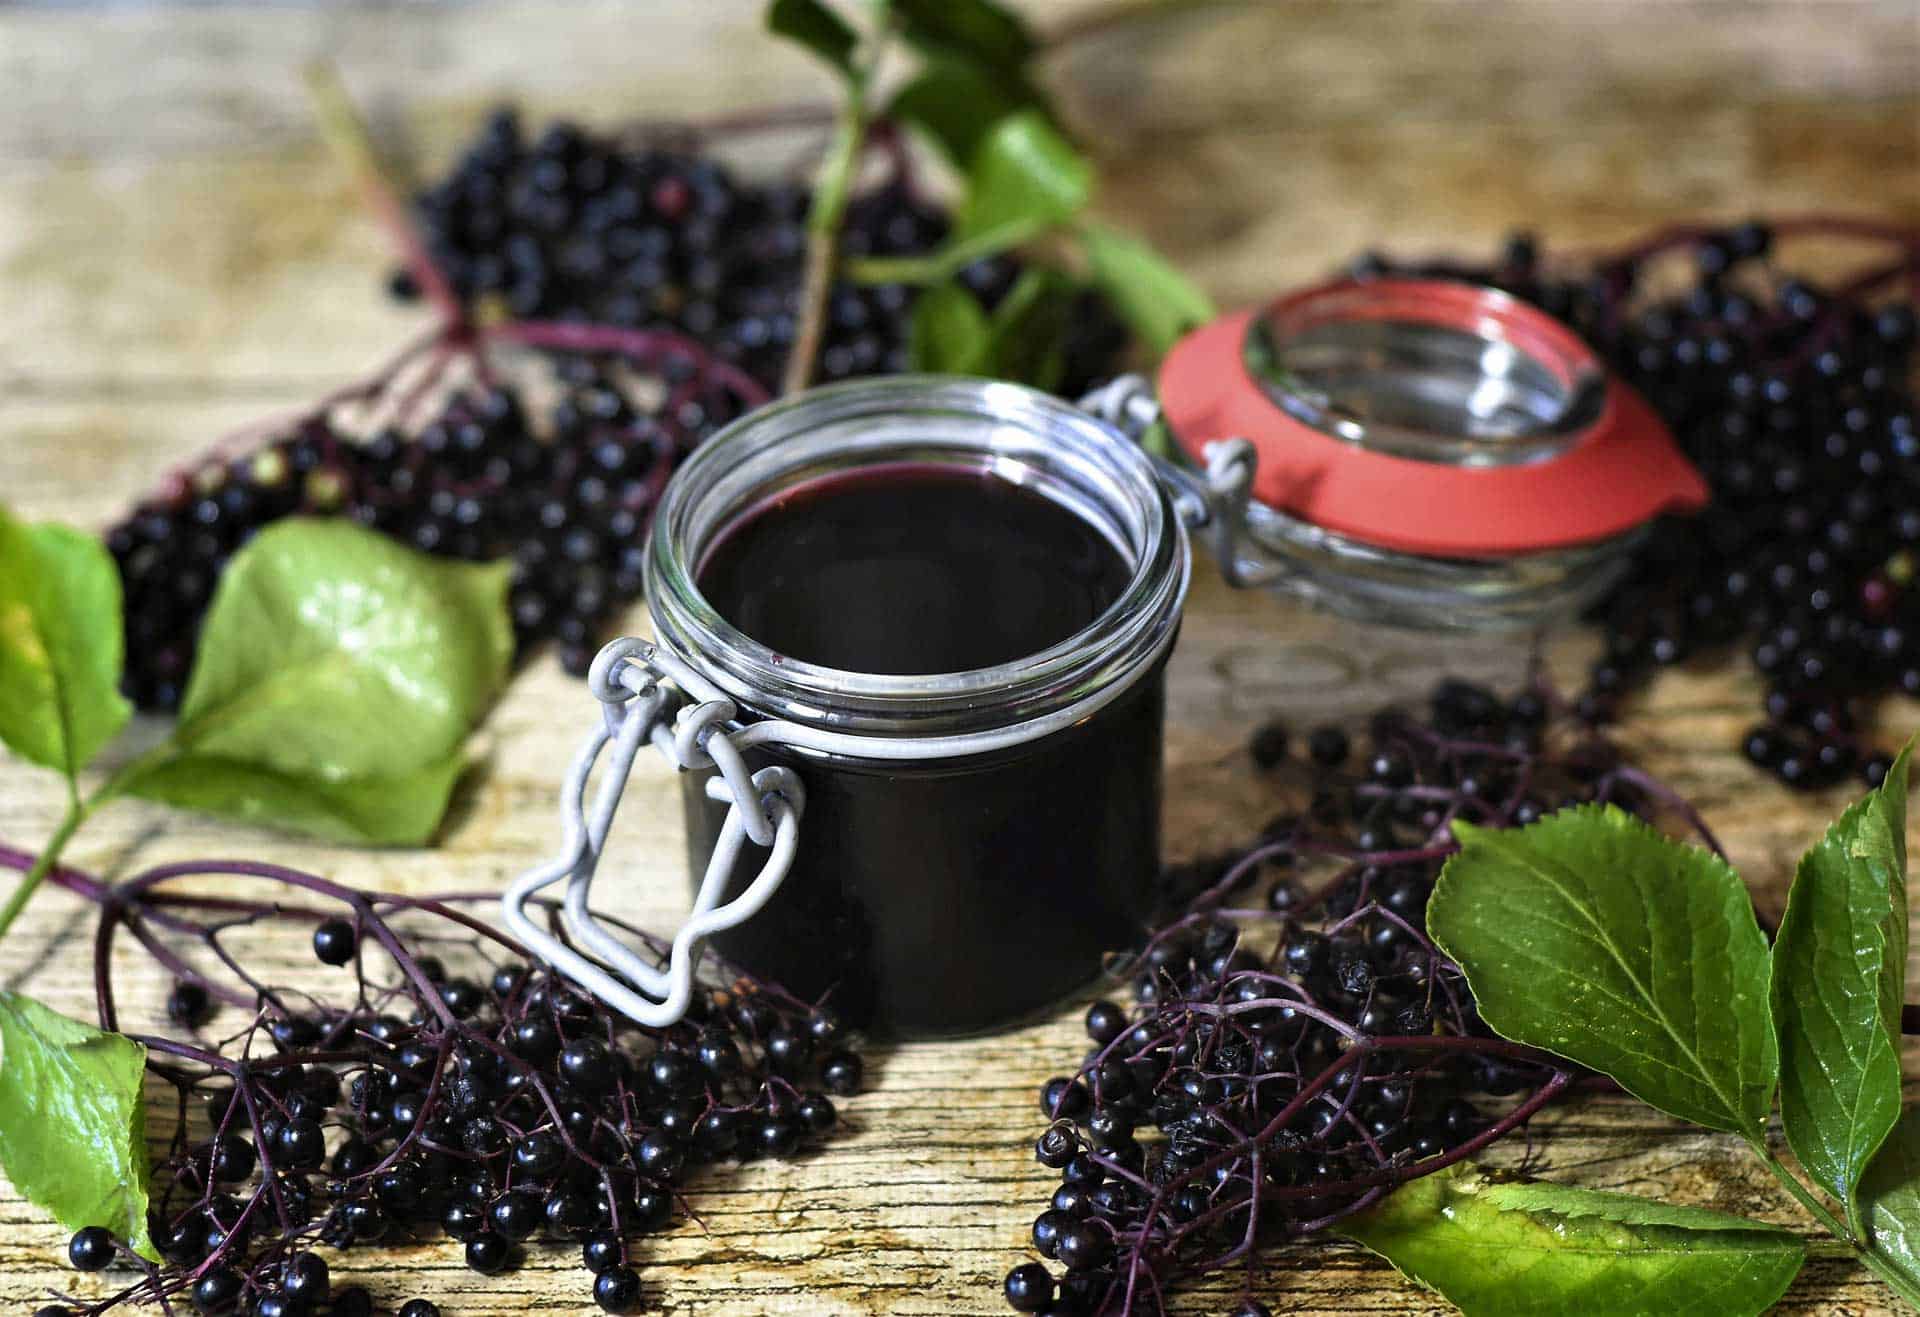 Elderberry Tea Benefits: 7 Amazing Ways It Can Change